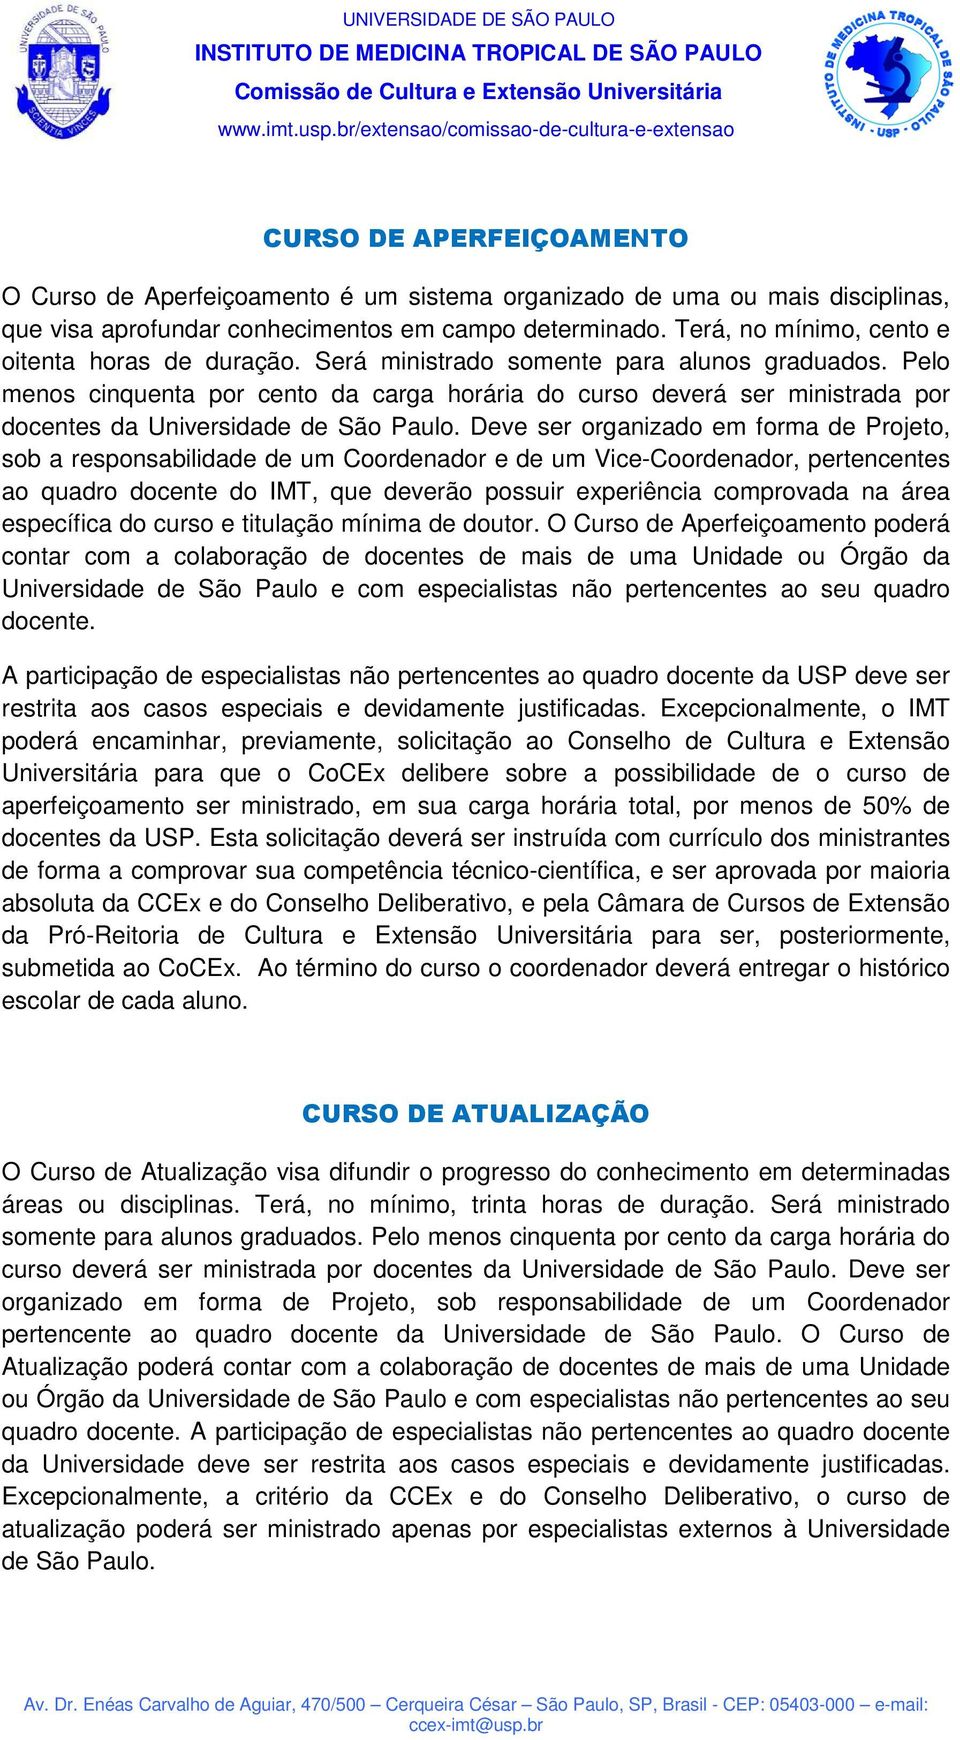 Pelo menos cinquenta por cento da carga horária do curso deverá ser ministrada por docentes da Universidade de São Paulo.